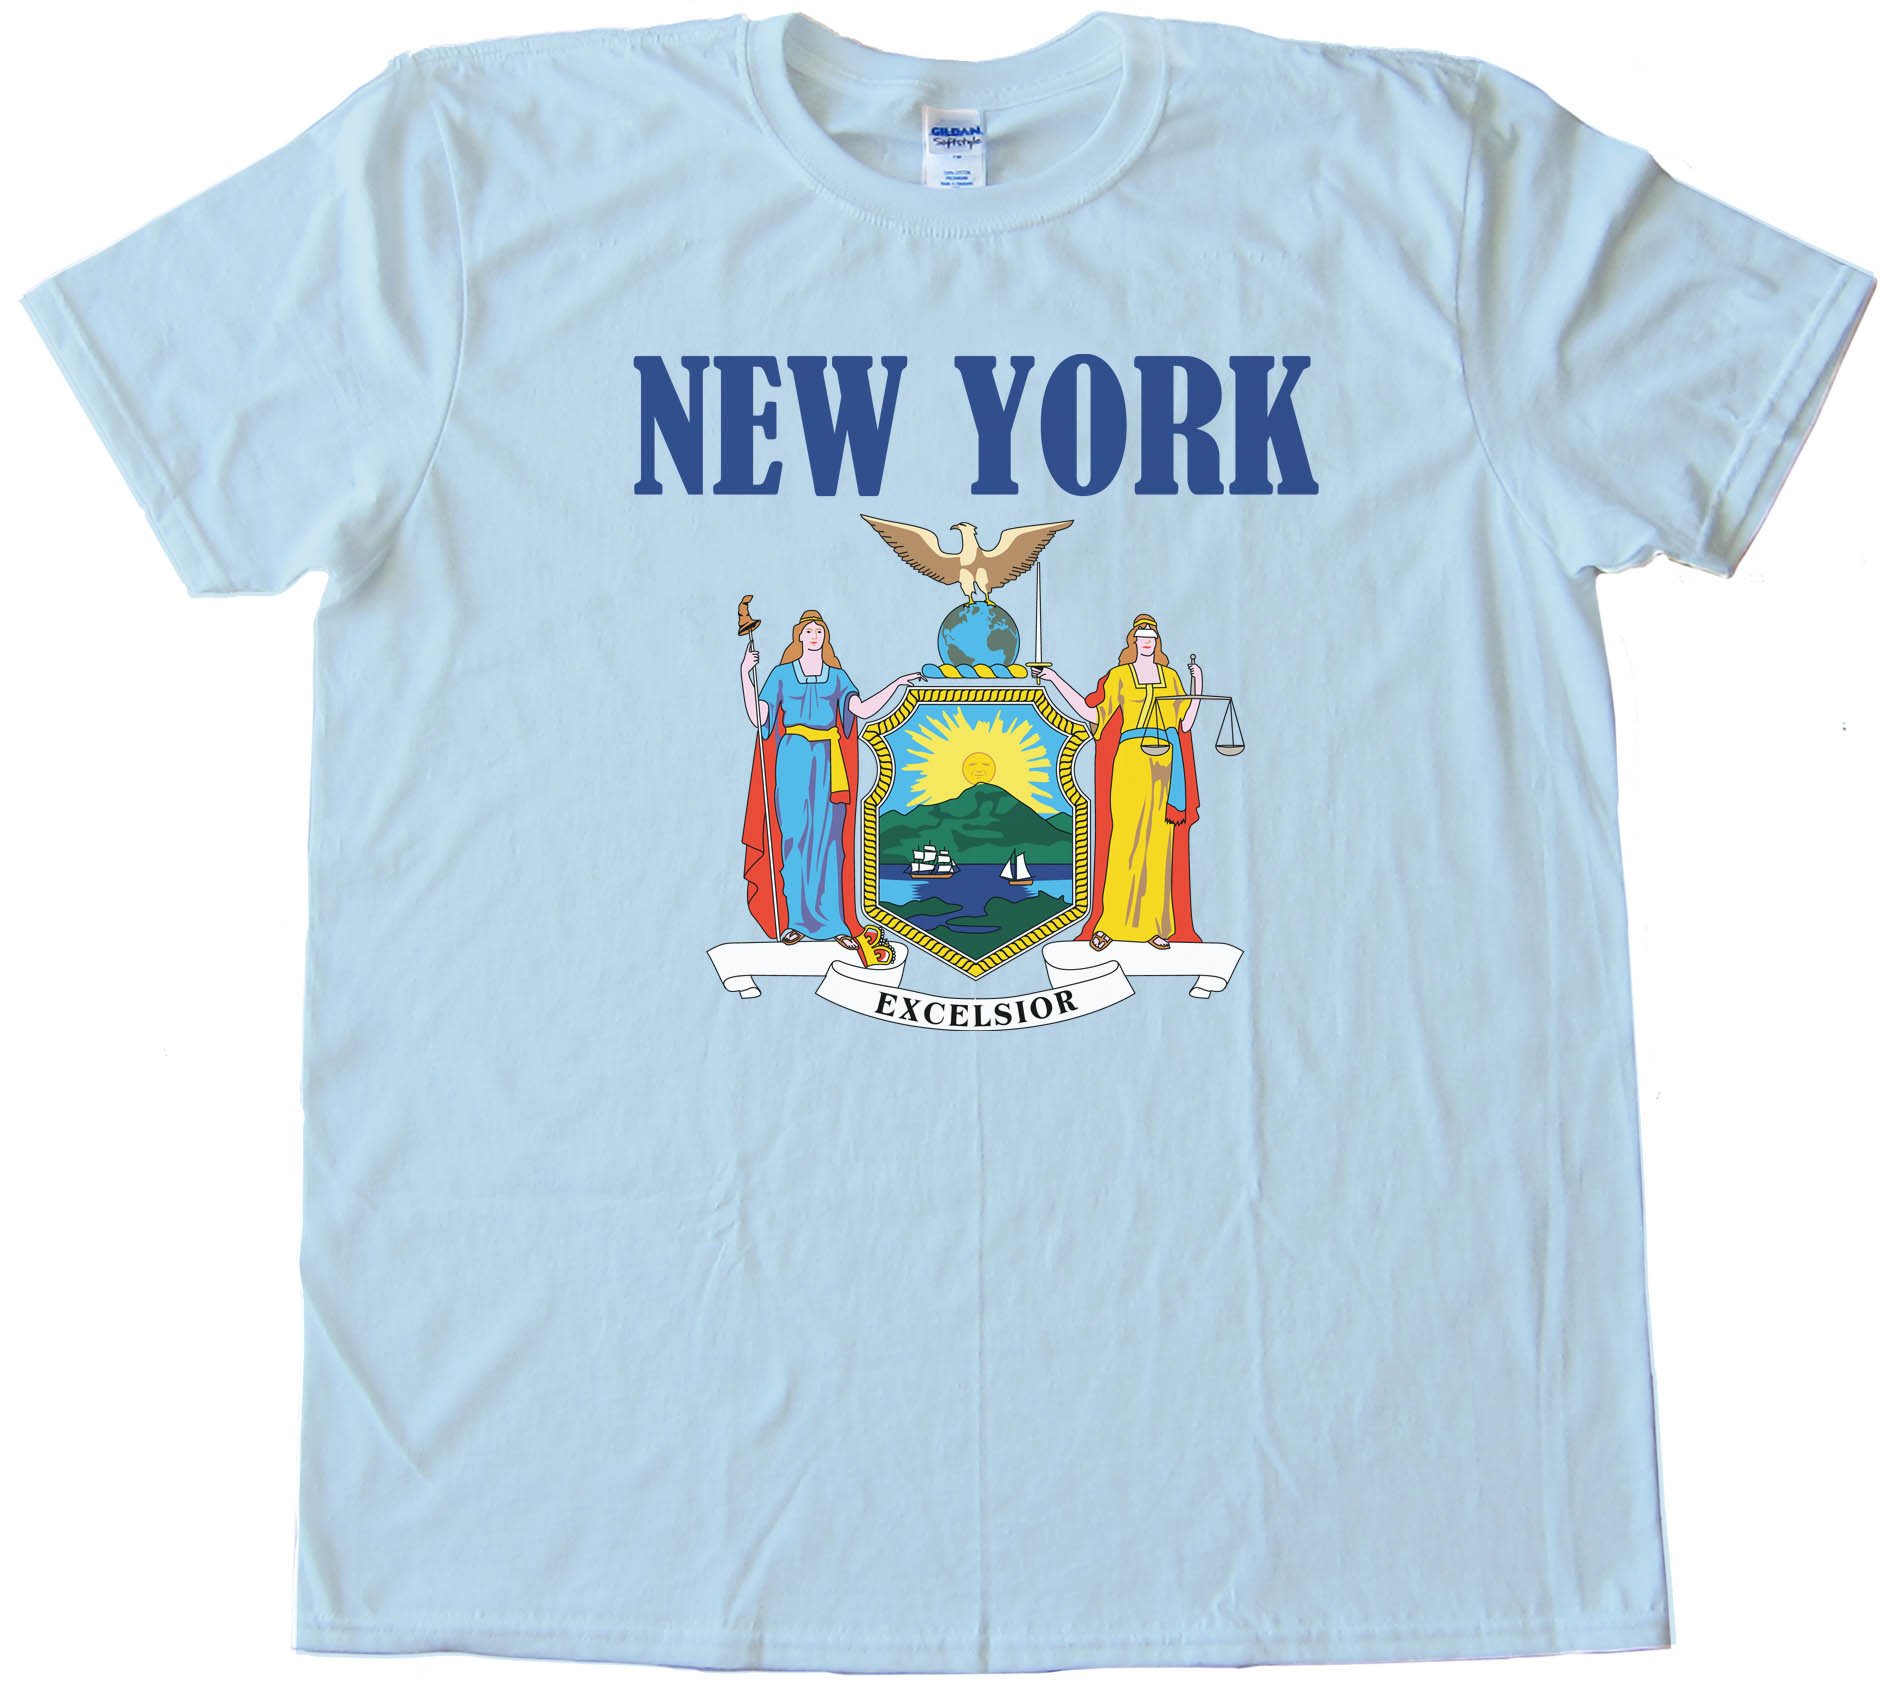 New York Stateflag - Tee Shirt